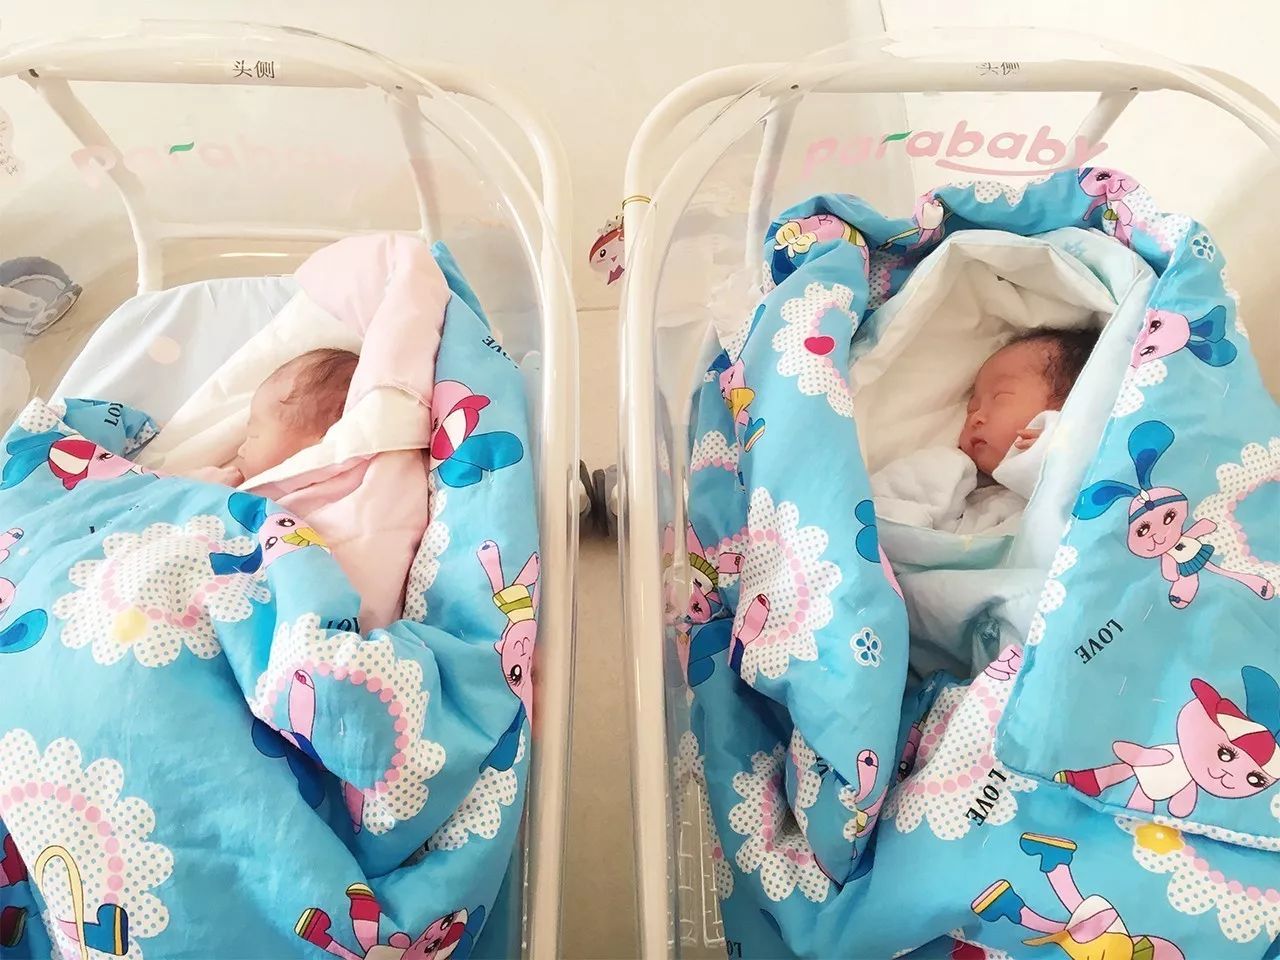 艾玛妇产助37岁高龄二胎宝妈,顺利分娩一对双胞胎国庆宝宝